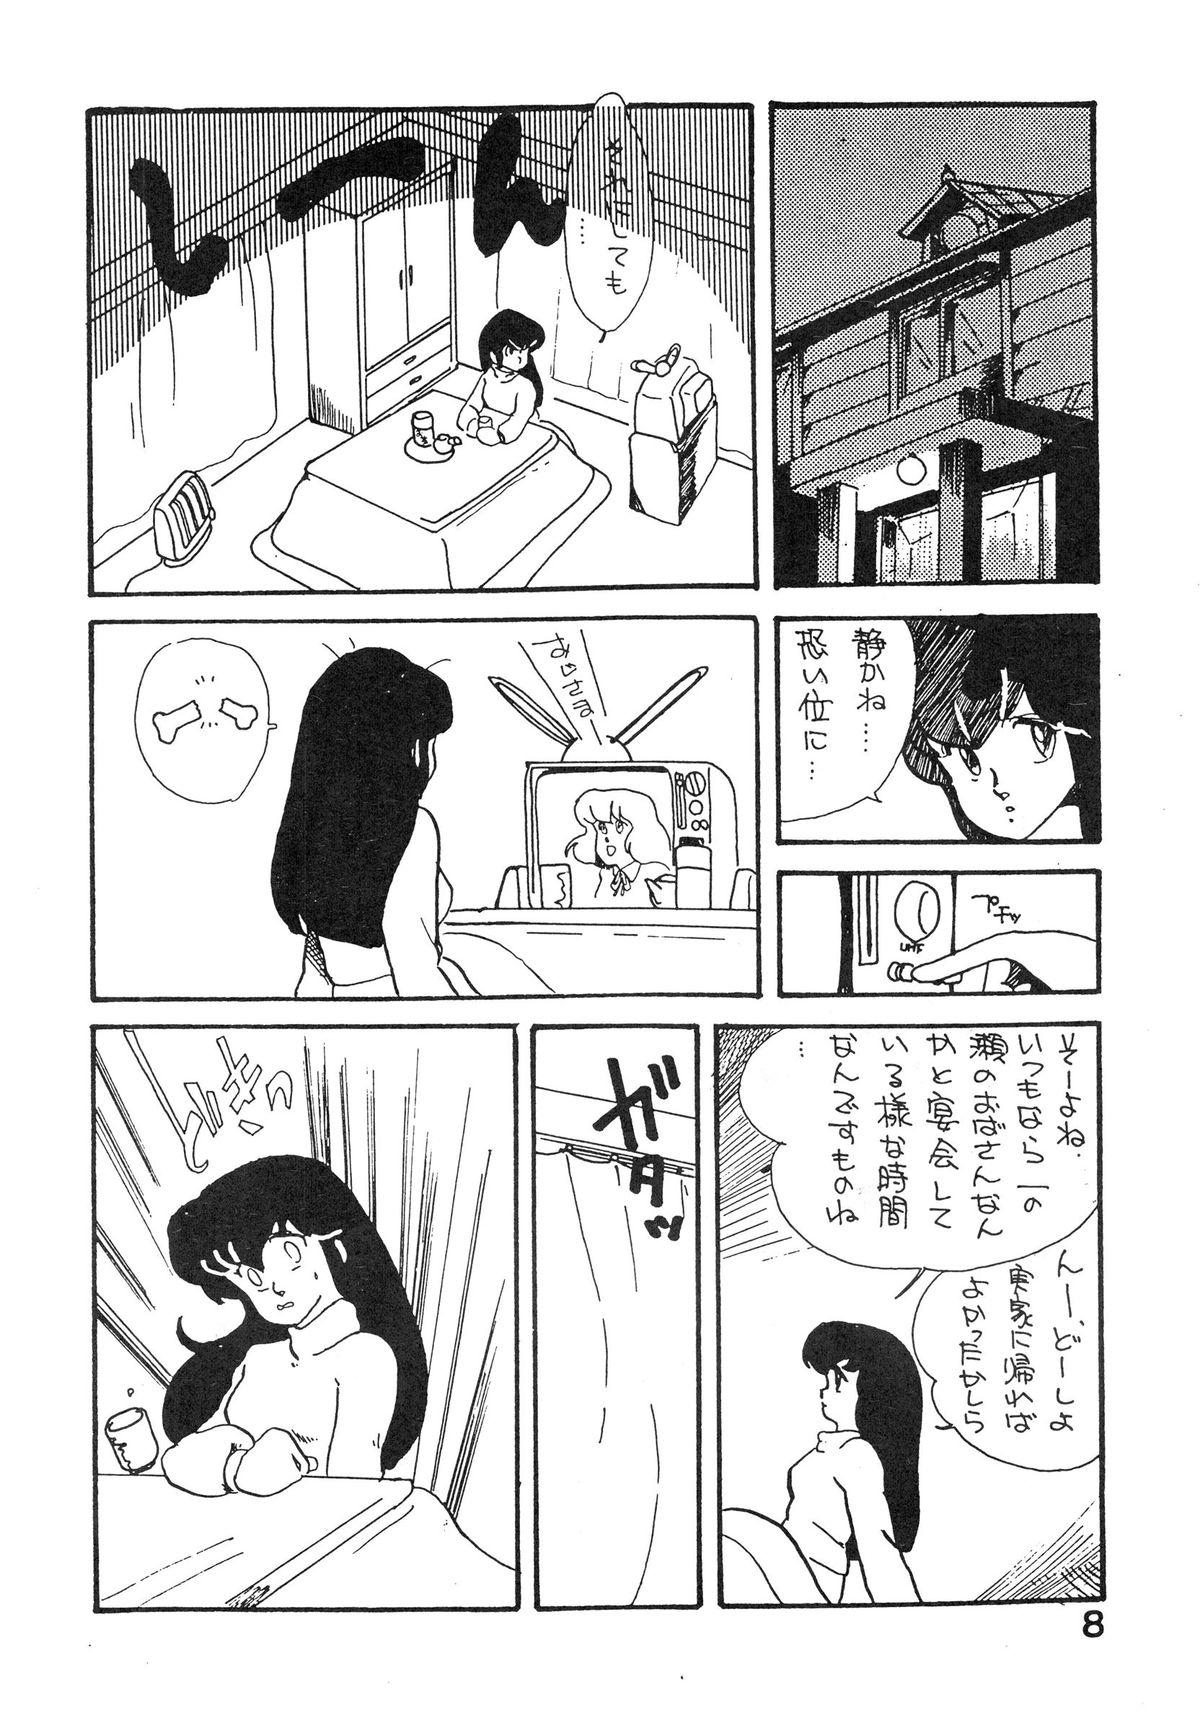 Peeing Natsuzuisen - Maison ikkoku Emo Gay - Page 8